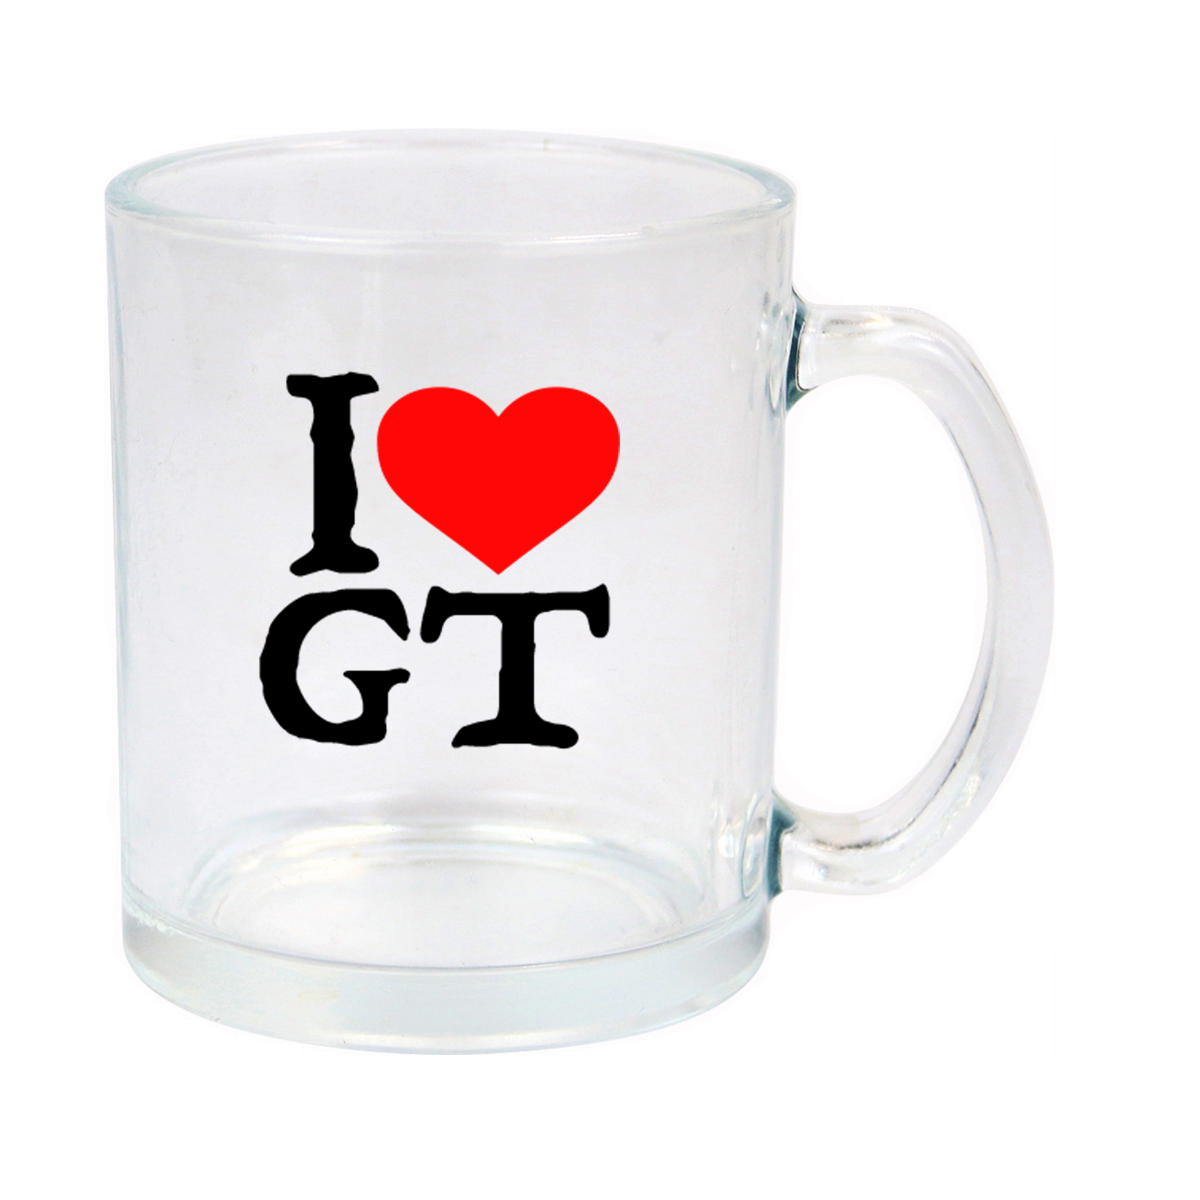 I Love Guatemala Glass Mug 11oz